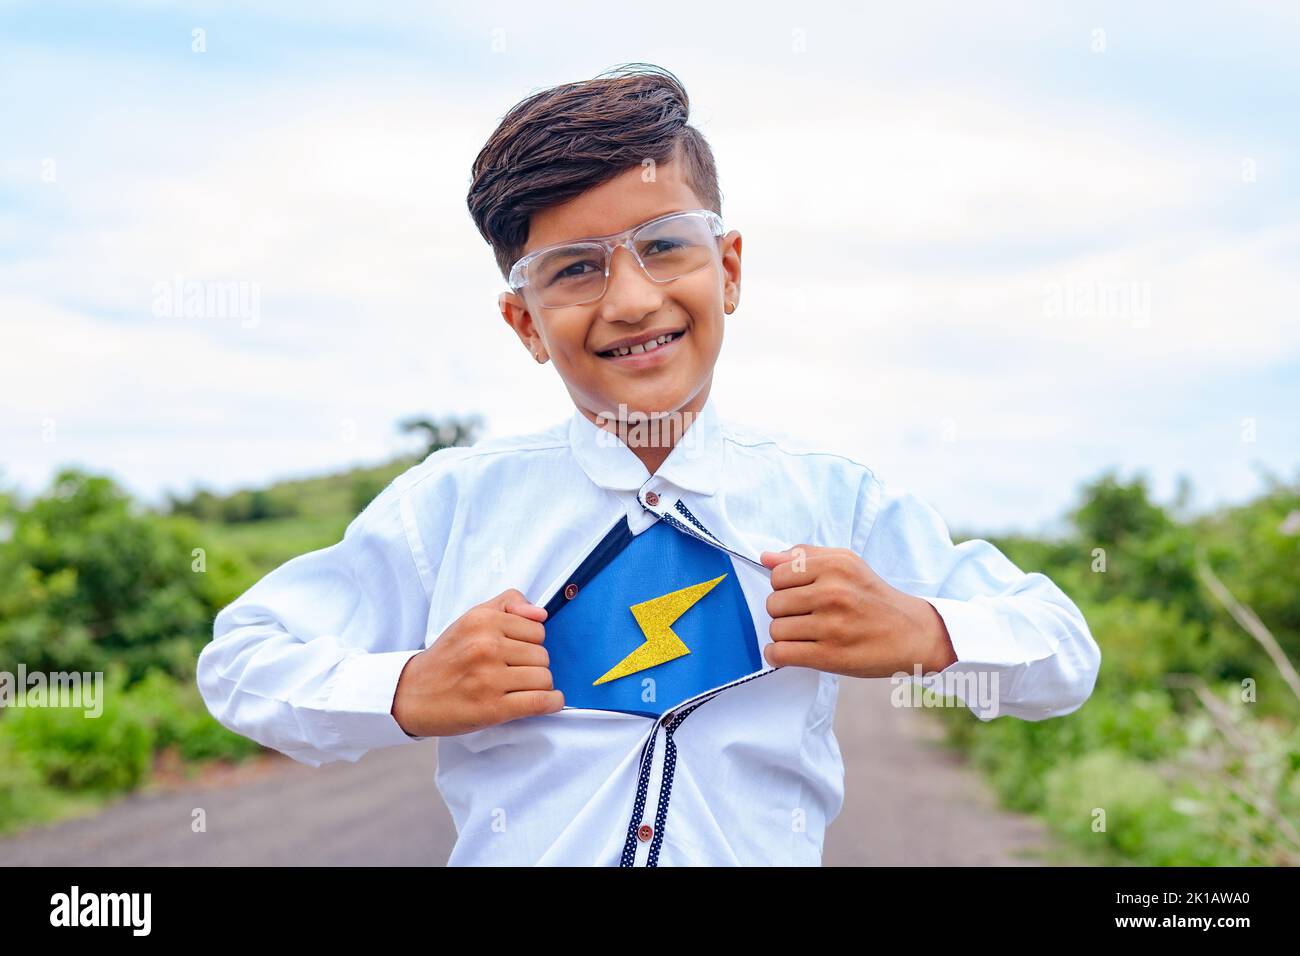 Niño feliz mostrando super poder eliminando el botón de la camisa - concepto de fantasía, Halloween e inspiración Foto de stock